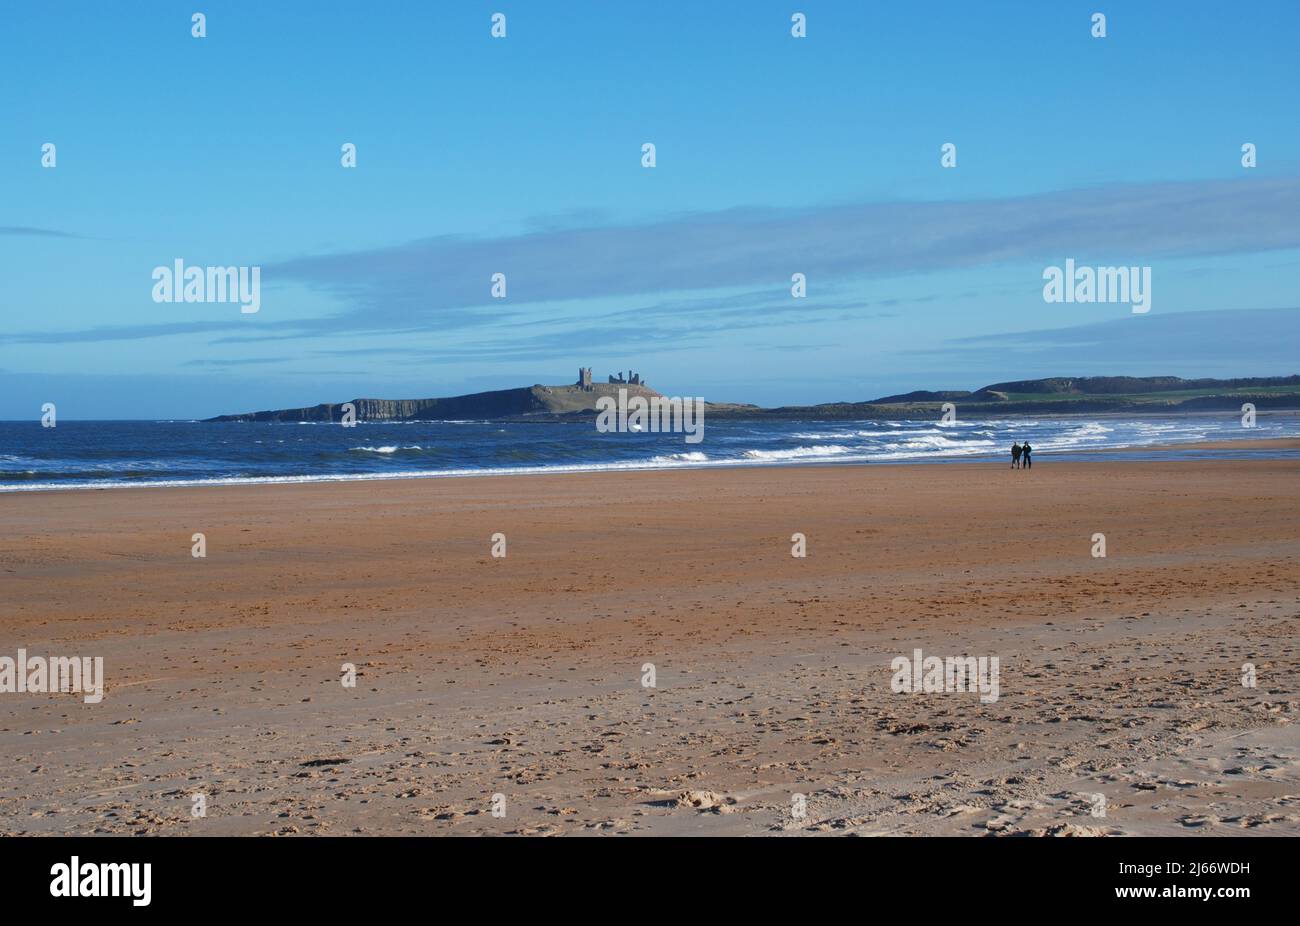 Una amplia playa abierta y casi vacía con dos personas cercanas a distancia caminando por la costa y el Castillo de Dunstanburgh en su cresta como telón de fondo distante Foto de stock